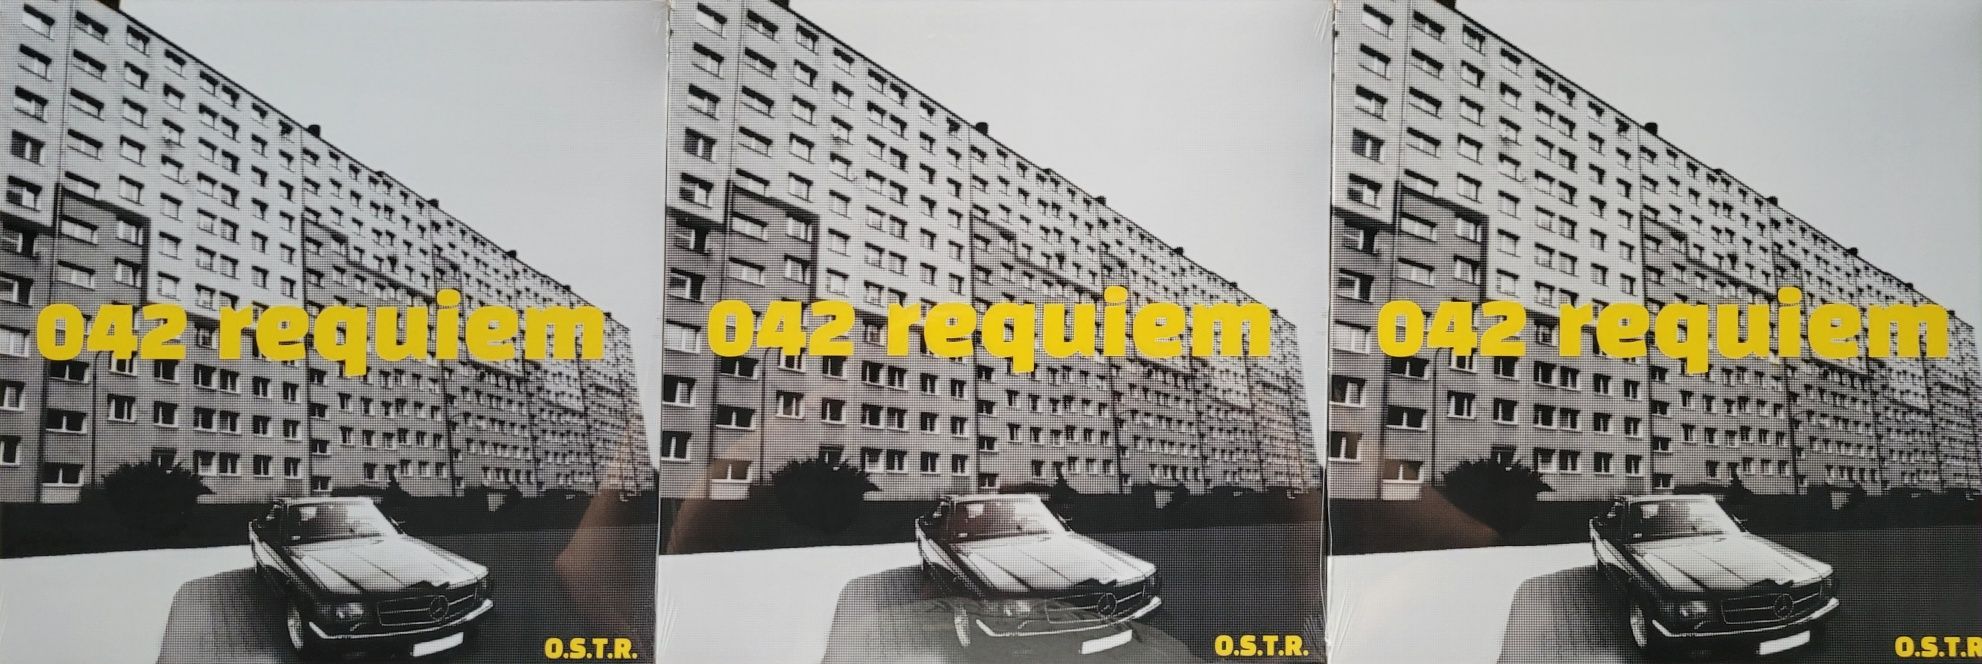 O.S.T.R. - 042 Requiem